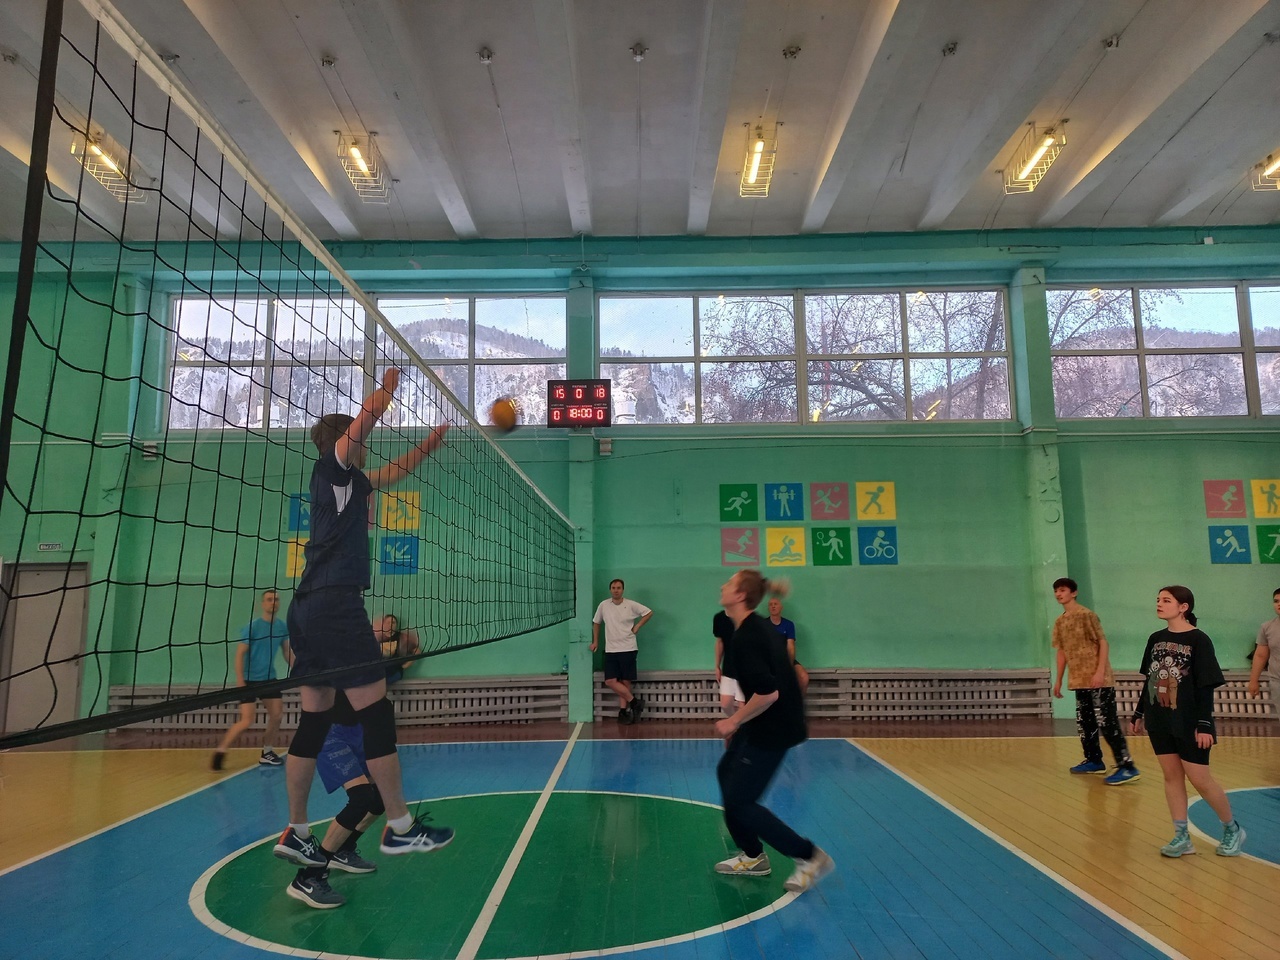 Сегодня состоялась матчевая встреча (волейбол) между командой ветеранов и учениками 4 школы (старшая группа, тренер О.В. Волкова).